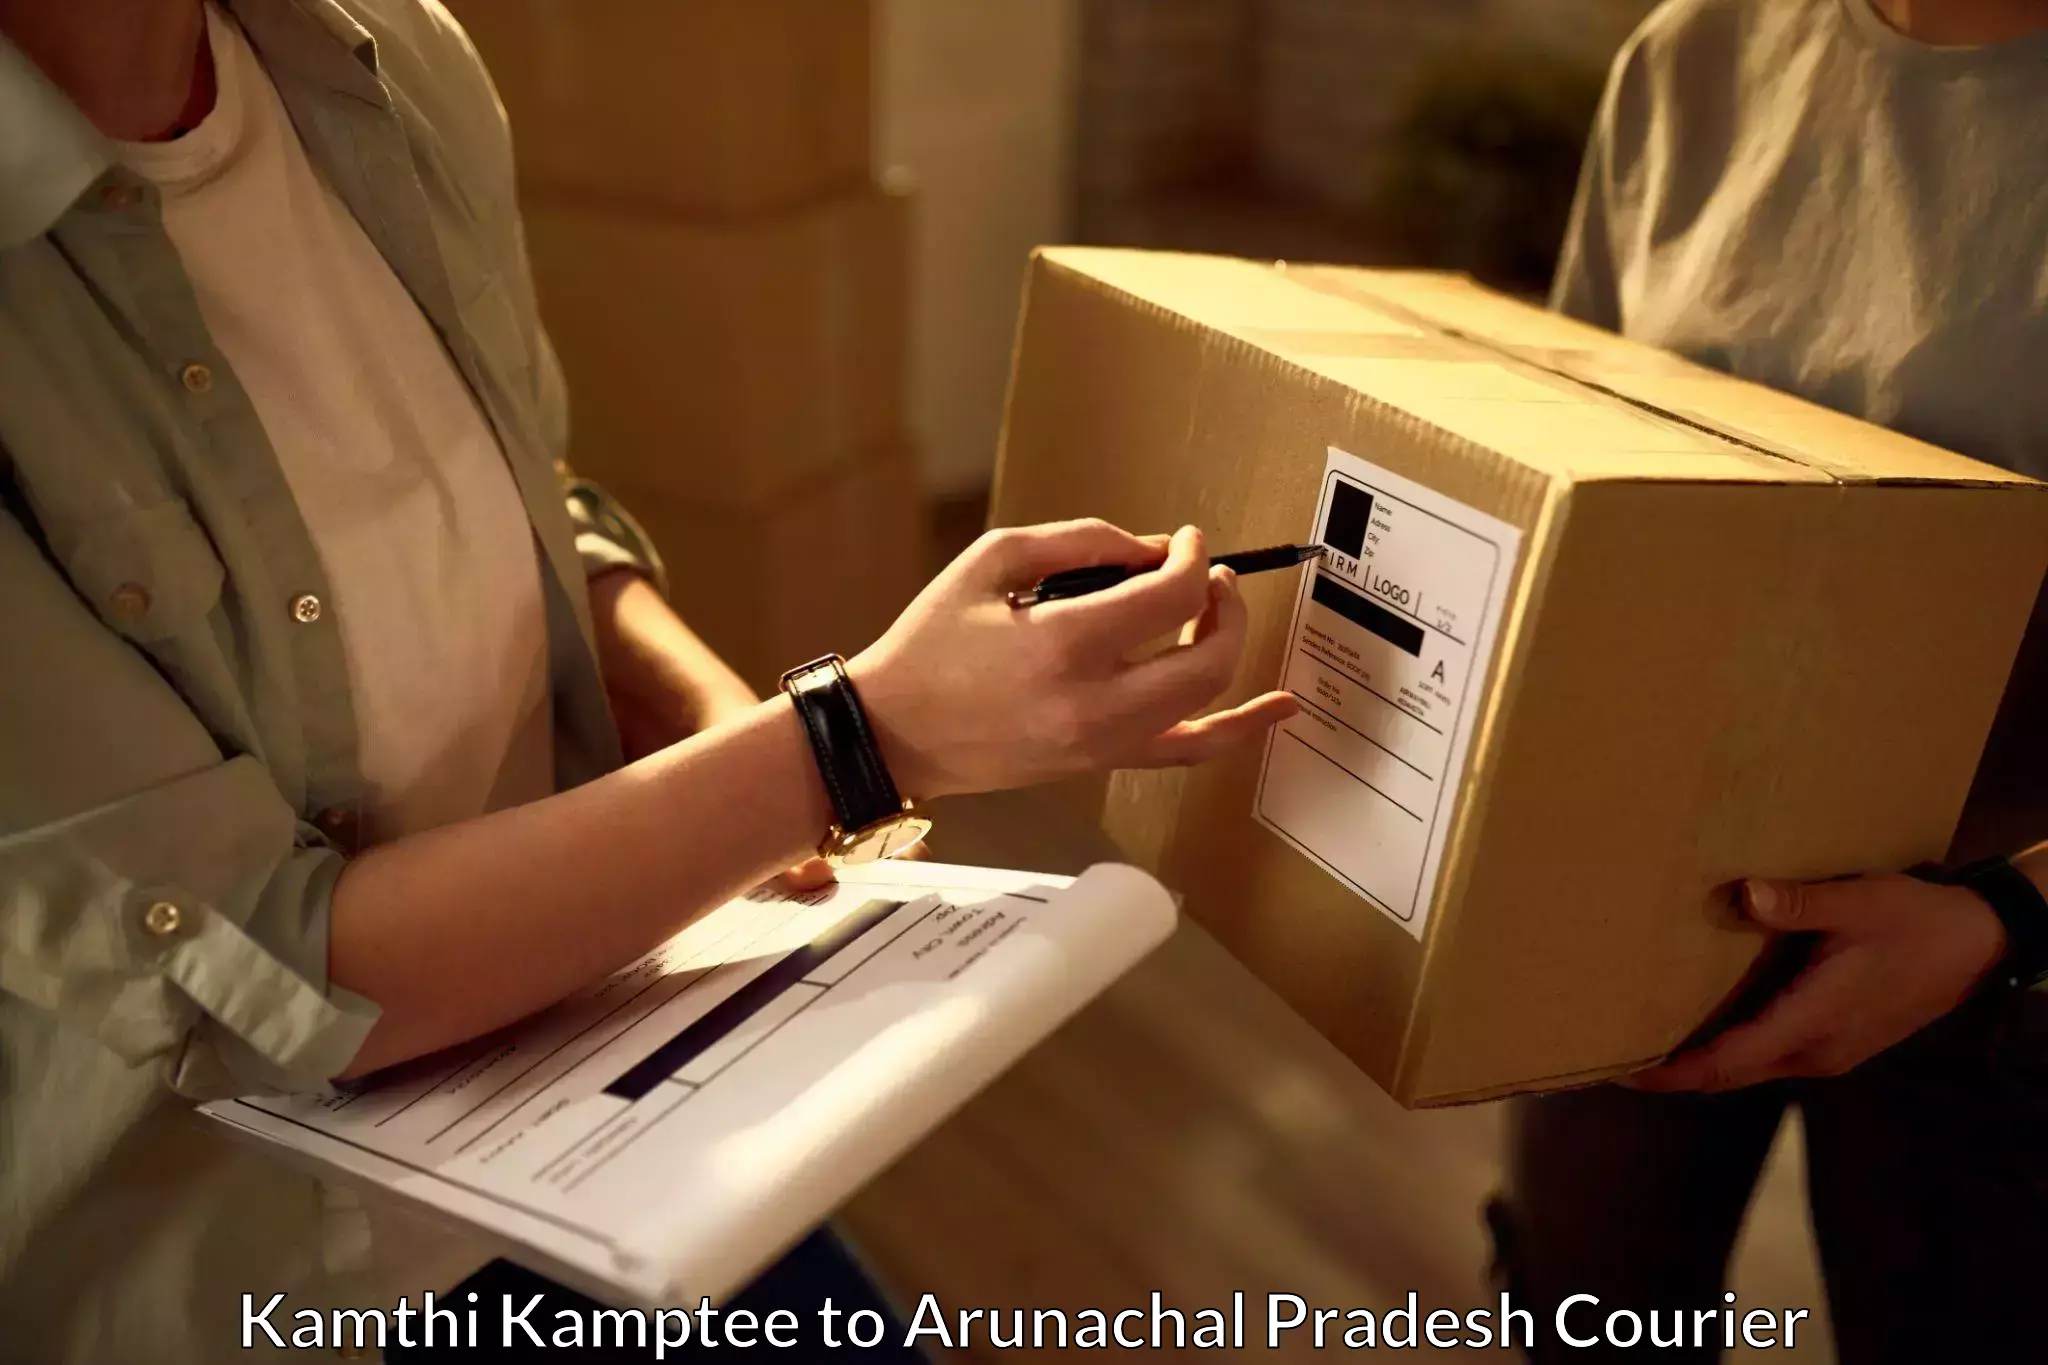 Express package handling Kamthi Kamptee to Arunachal Pradesh